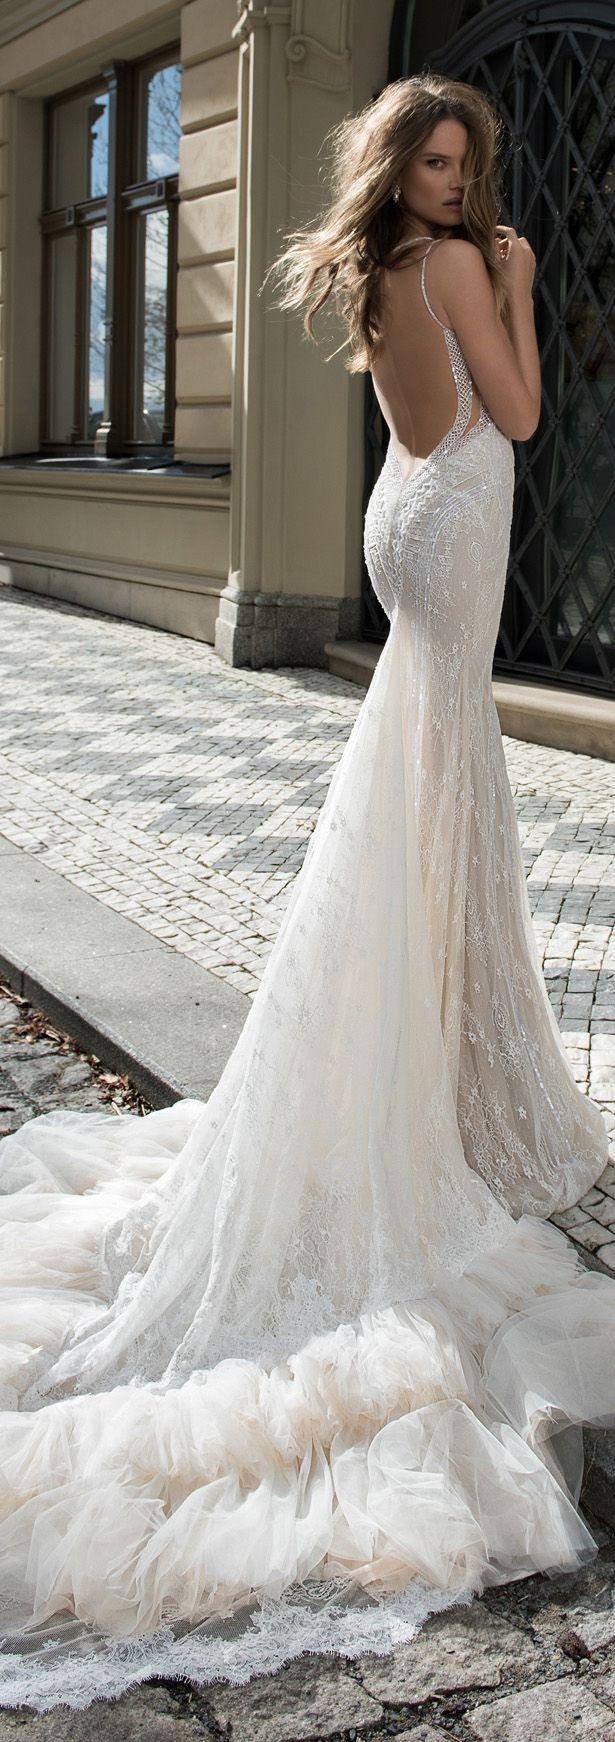 Wedding - Wedding Dresses By Berta Bridal Fall 2015